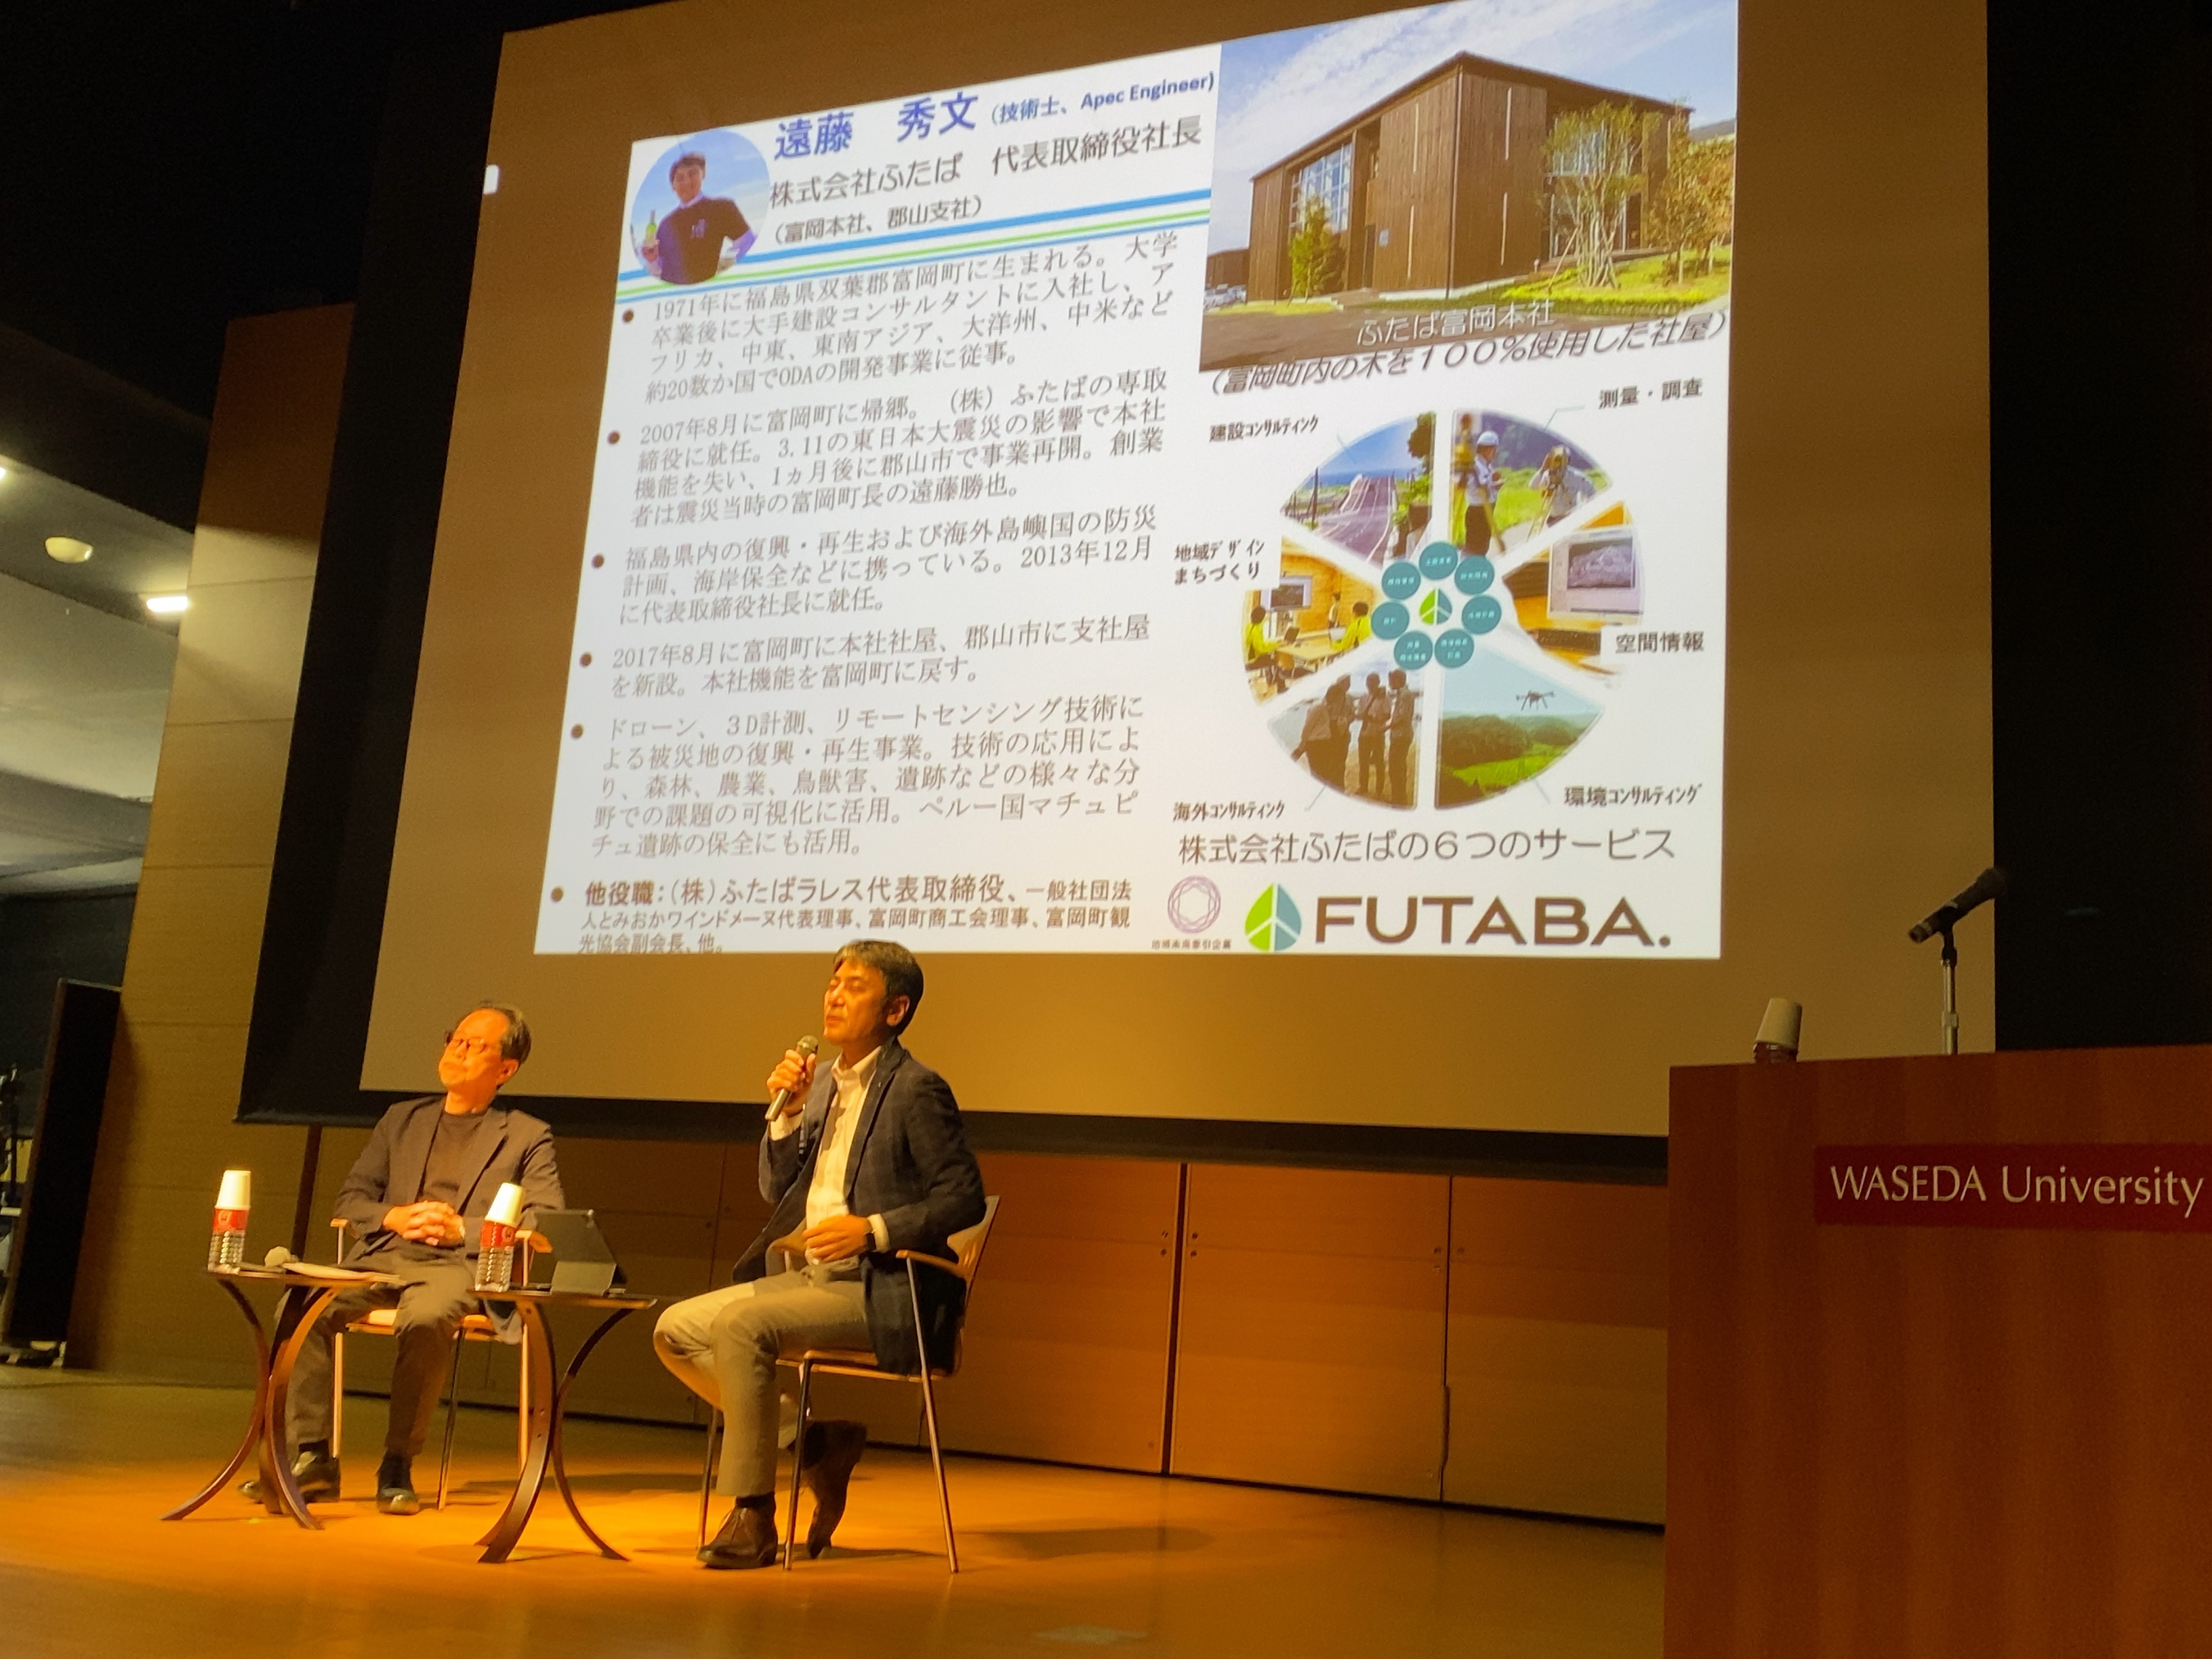 弊社代表遠藤が早稲田大学総合研究機構シンポジウムに登壇しました。の画像